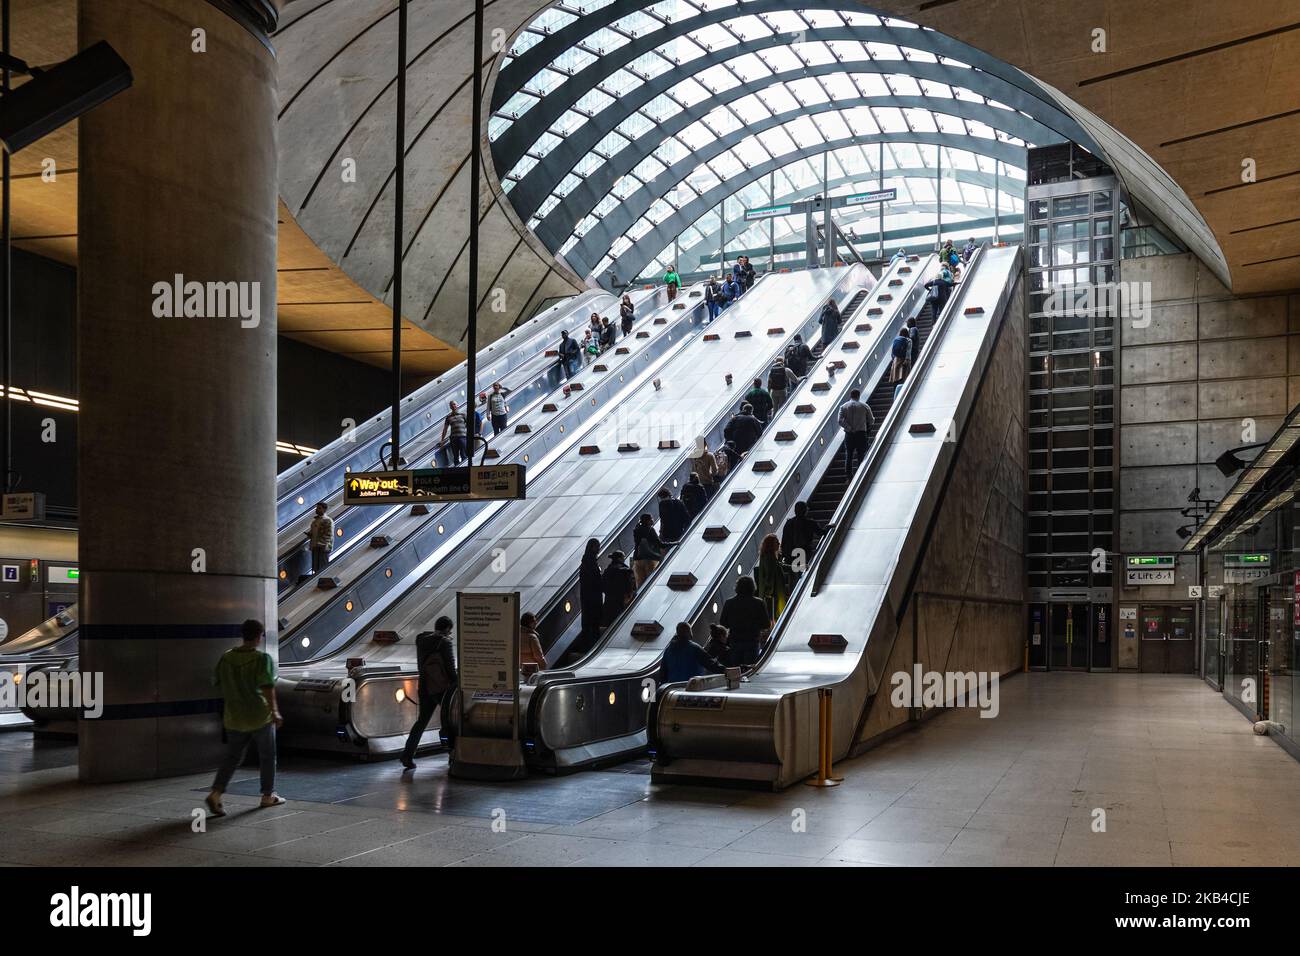 Personnes sur les escaliers roulants à Canary Wharf souterrain, station de métro Londres Angleterre Royaume-Uni Banque D'Images